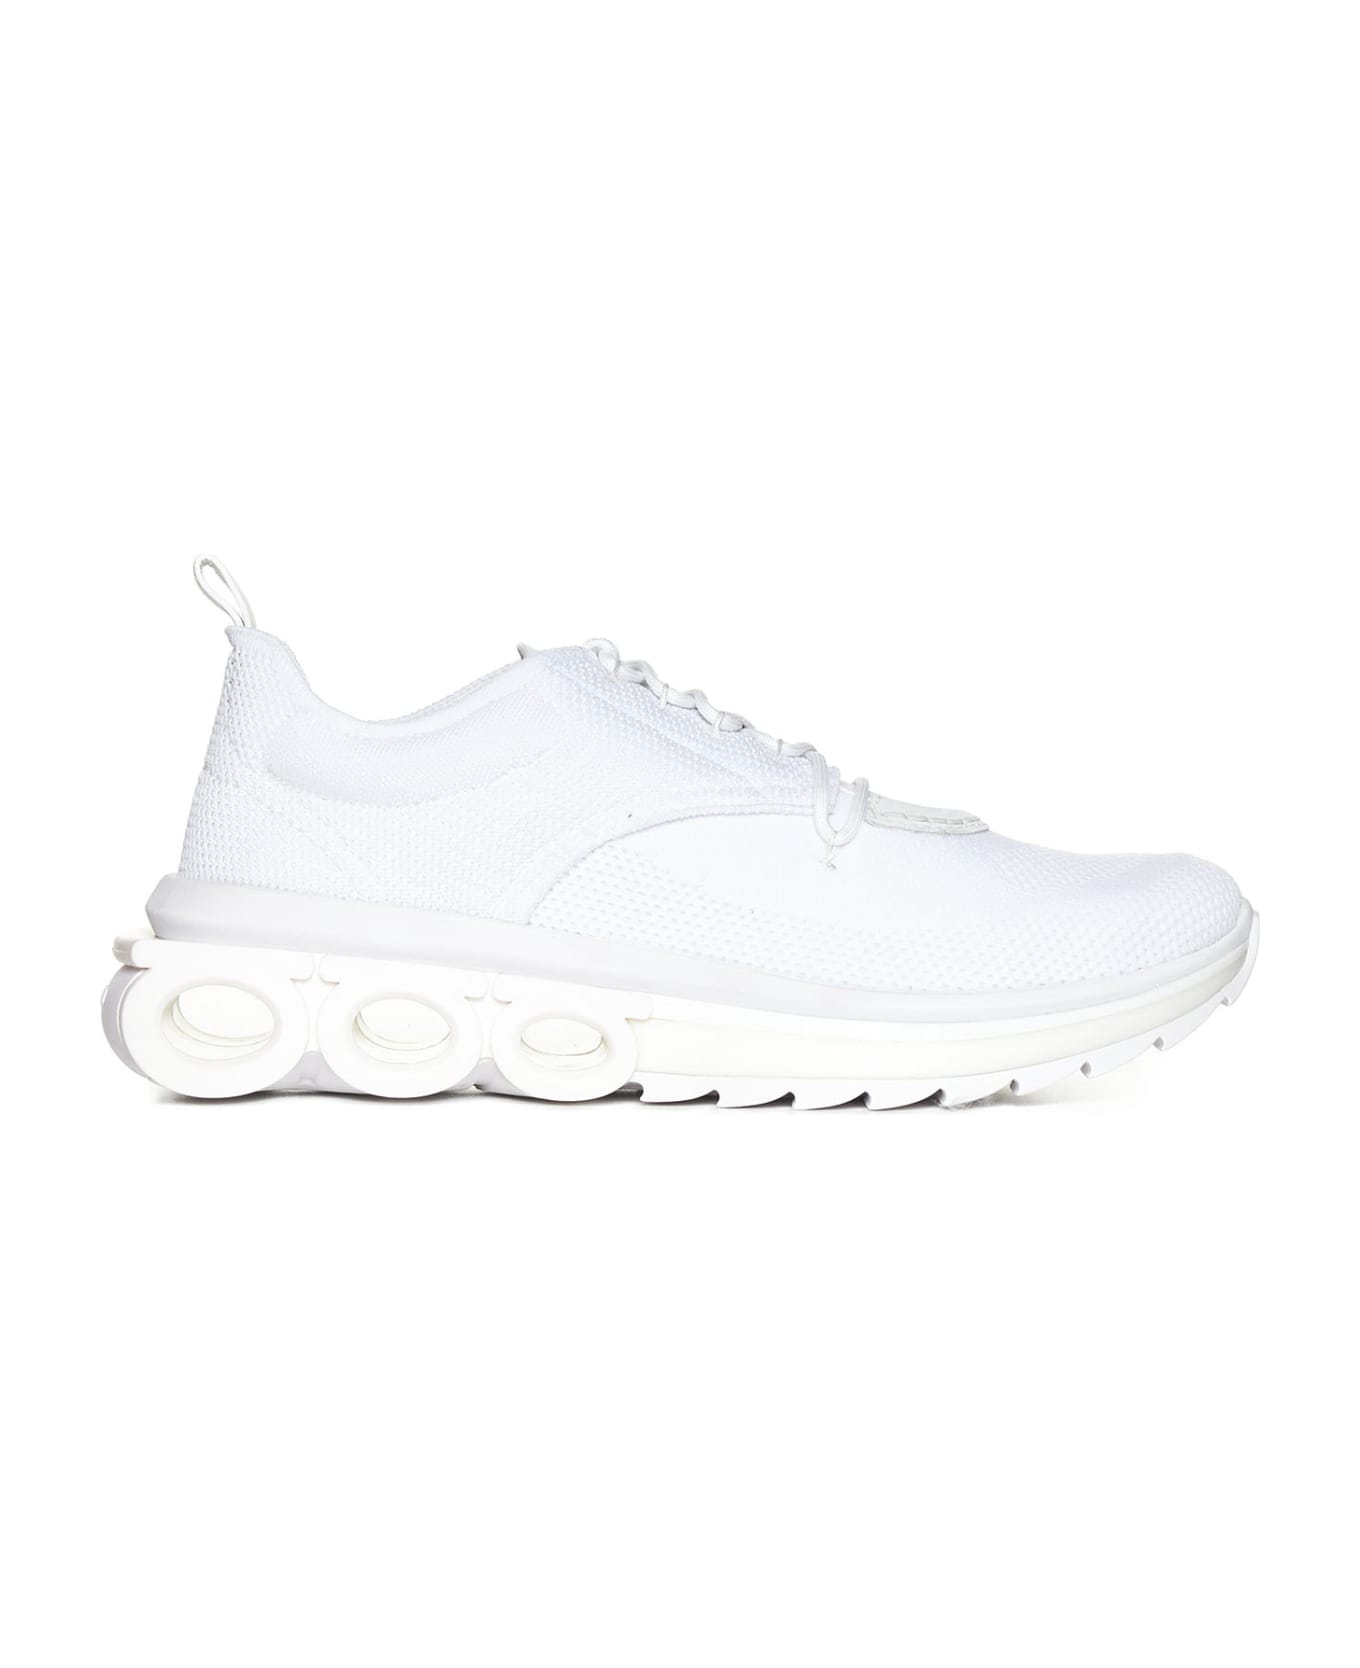 Ferragamo Sneakers - White